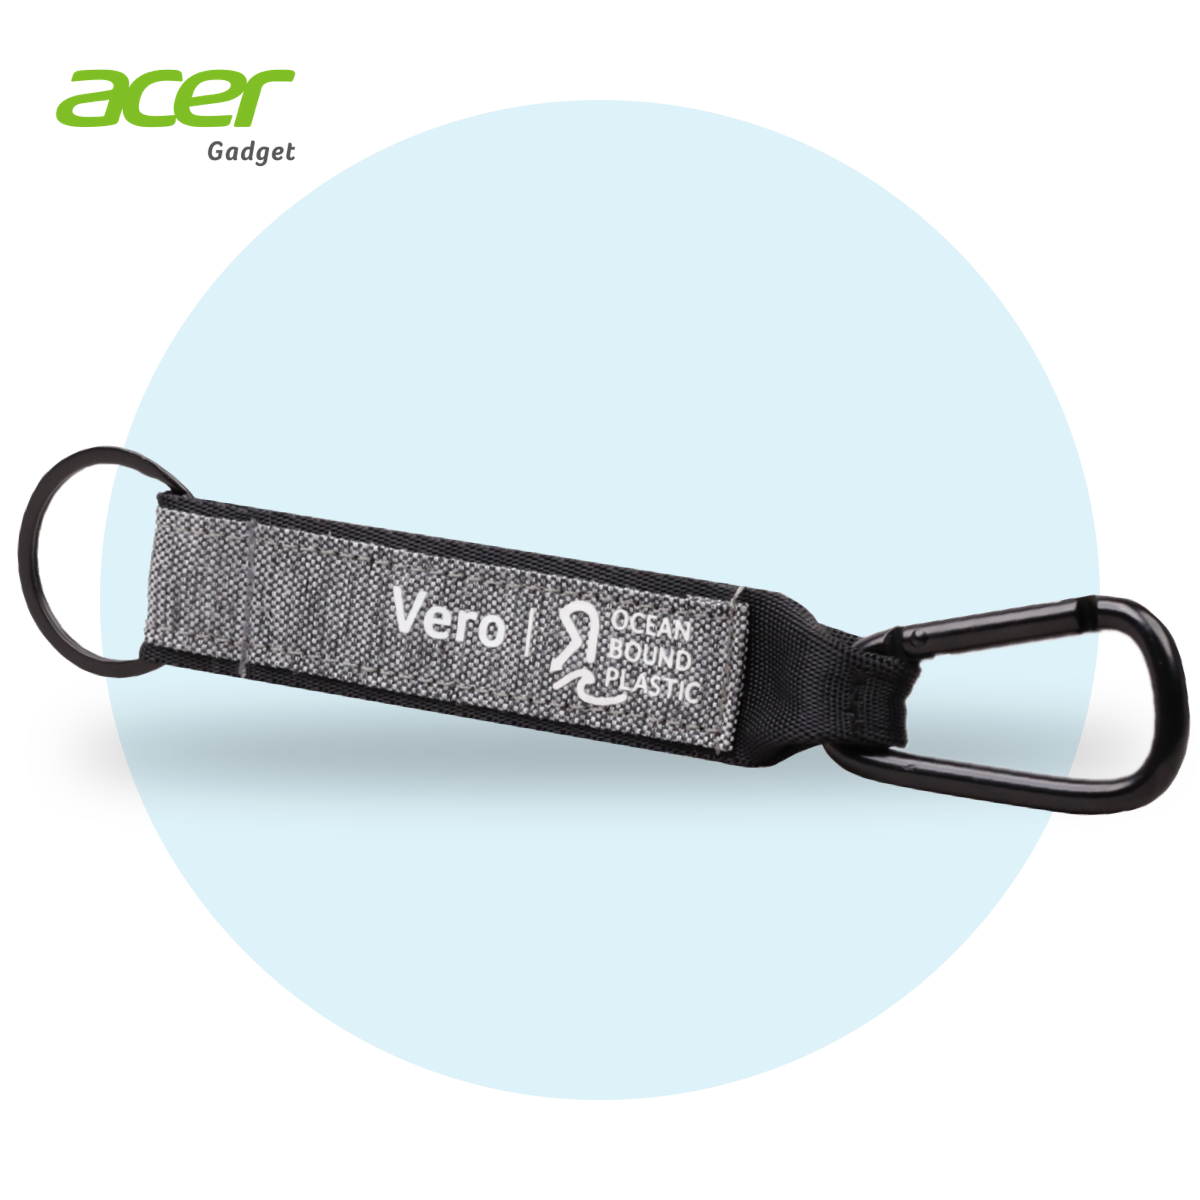 Acer Vero Ocean 輕巧鑰匙扣